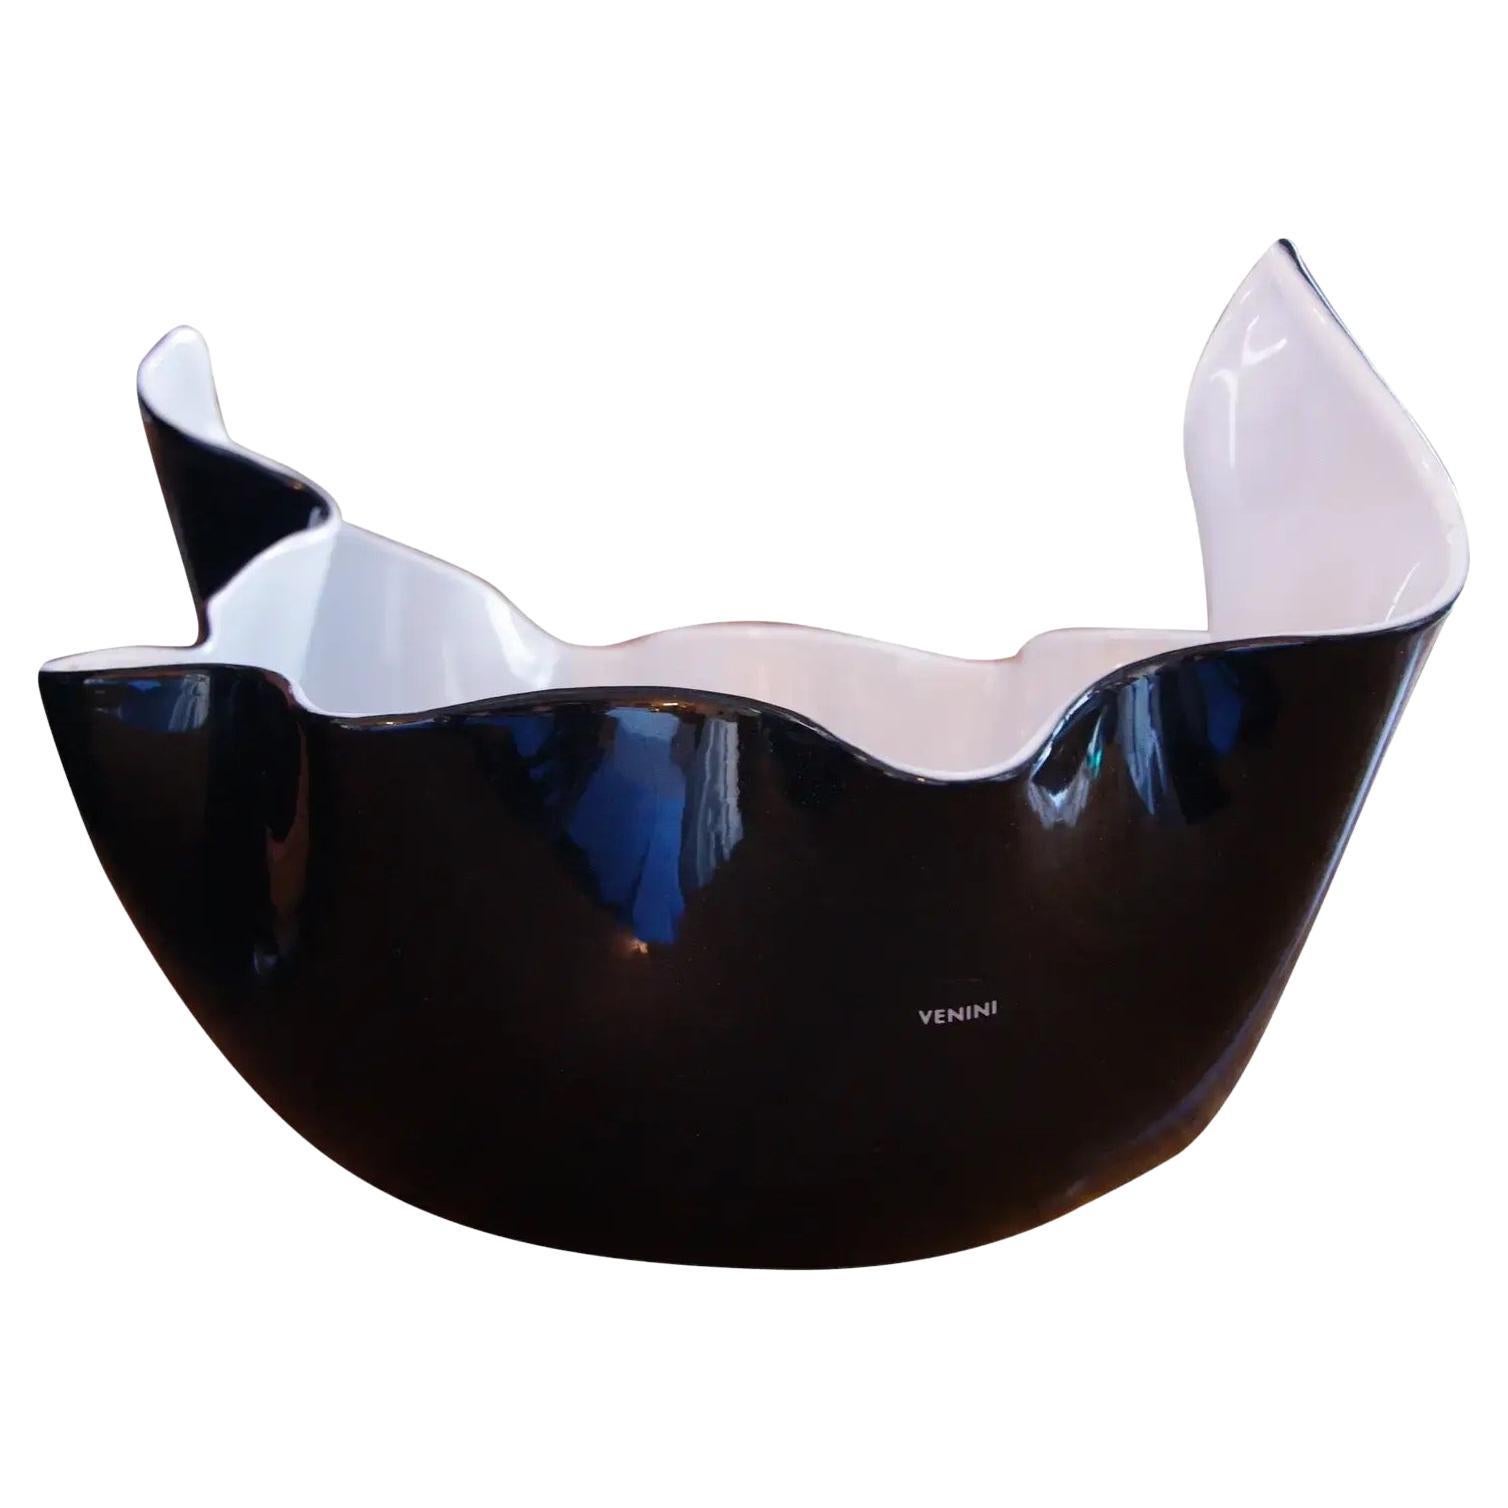 Venini 'Fazzoletto' Handkerchief Murano Glass Vase Limited Edition Black White For Sale